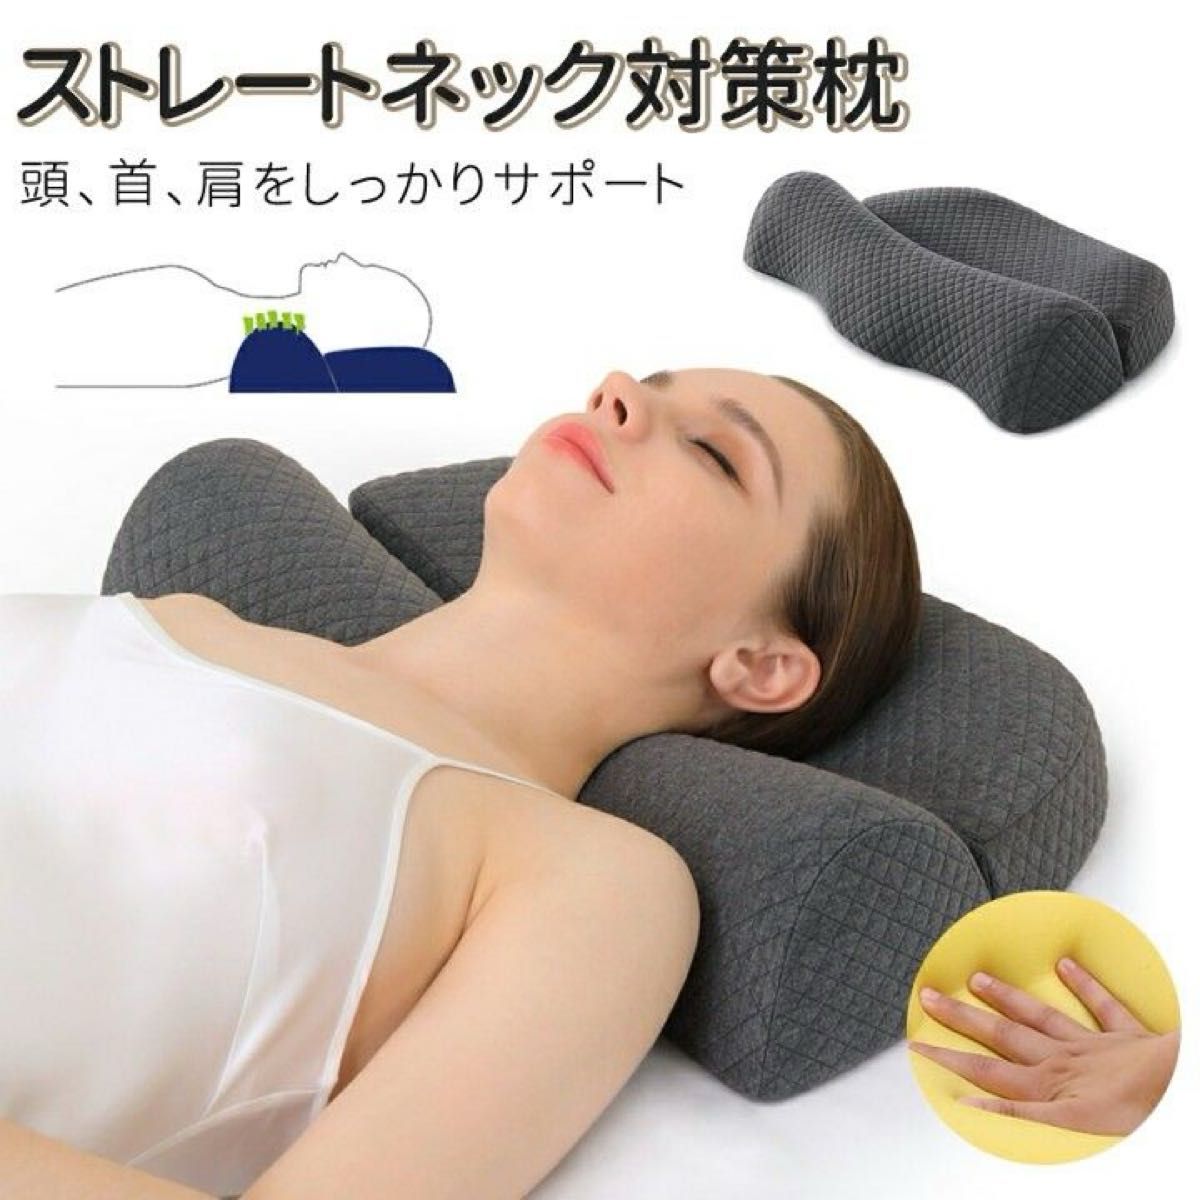 洗える枕カバー付き 頚椎牽引枕 低反発 肩こり 首こり 頭痛 体圧分散 ストレートネック いびき 熟睡 快眠 安眠枕 仰向け横向き